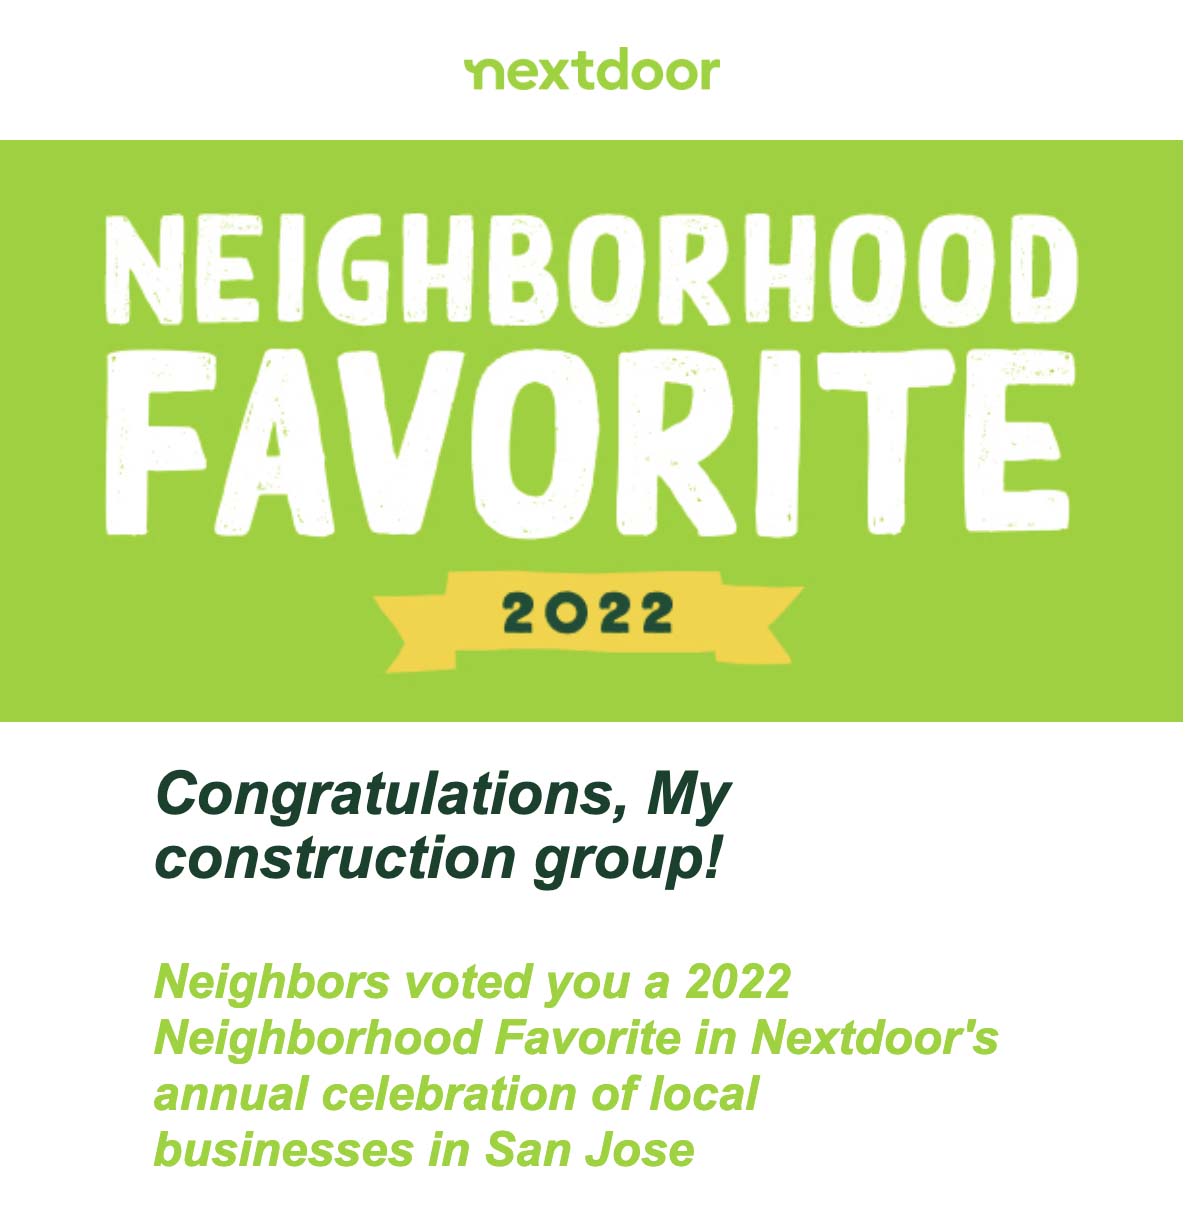 2022 NextDoor Neighborhood Favorite